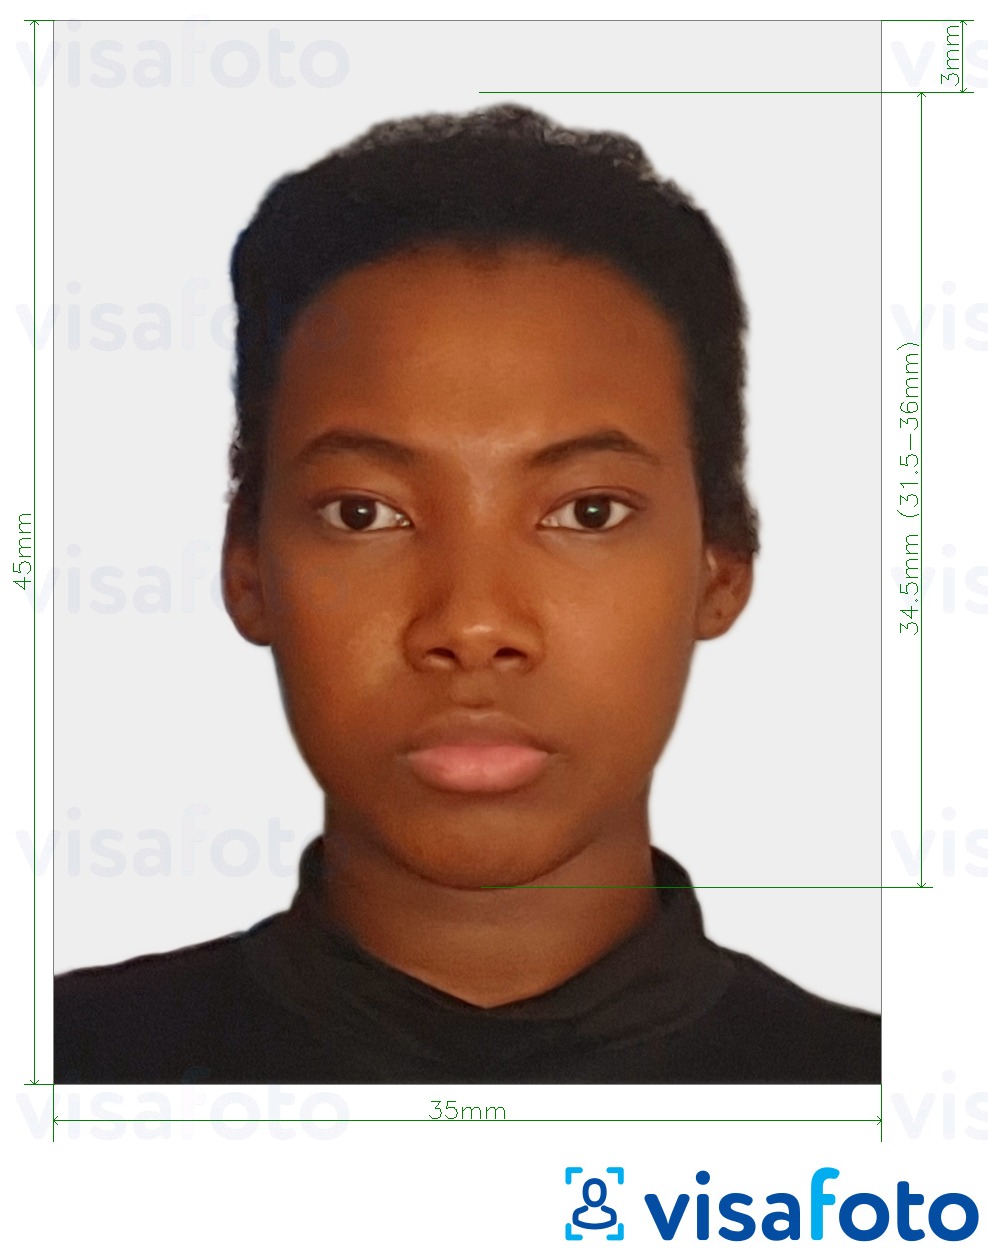 Ejemplo de foto para Visa de Sudáfrica 35x45 mm (3.5x4.5 cm) con la especificación del tamaño exacto